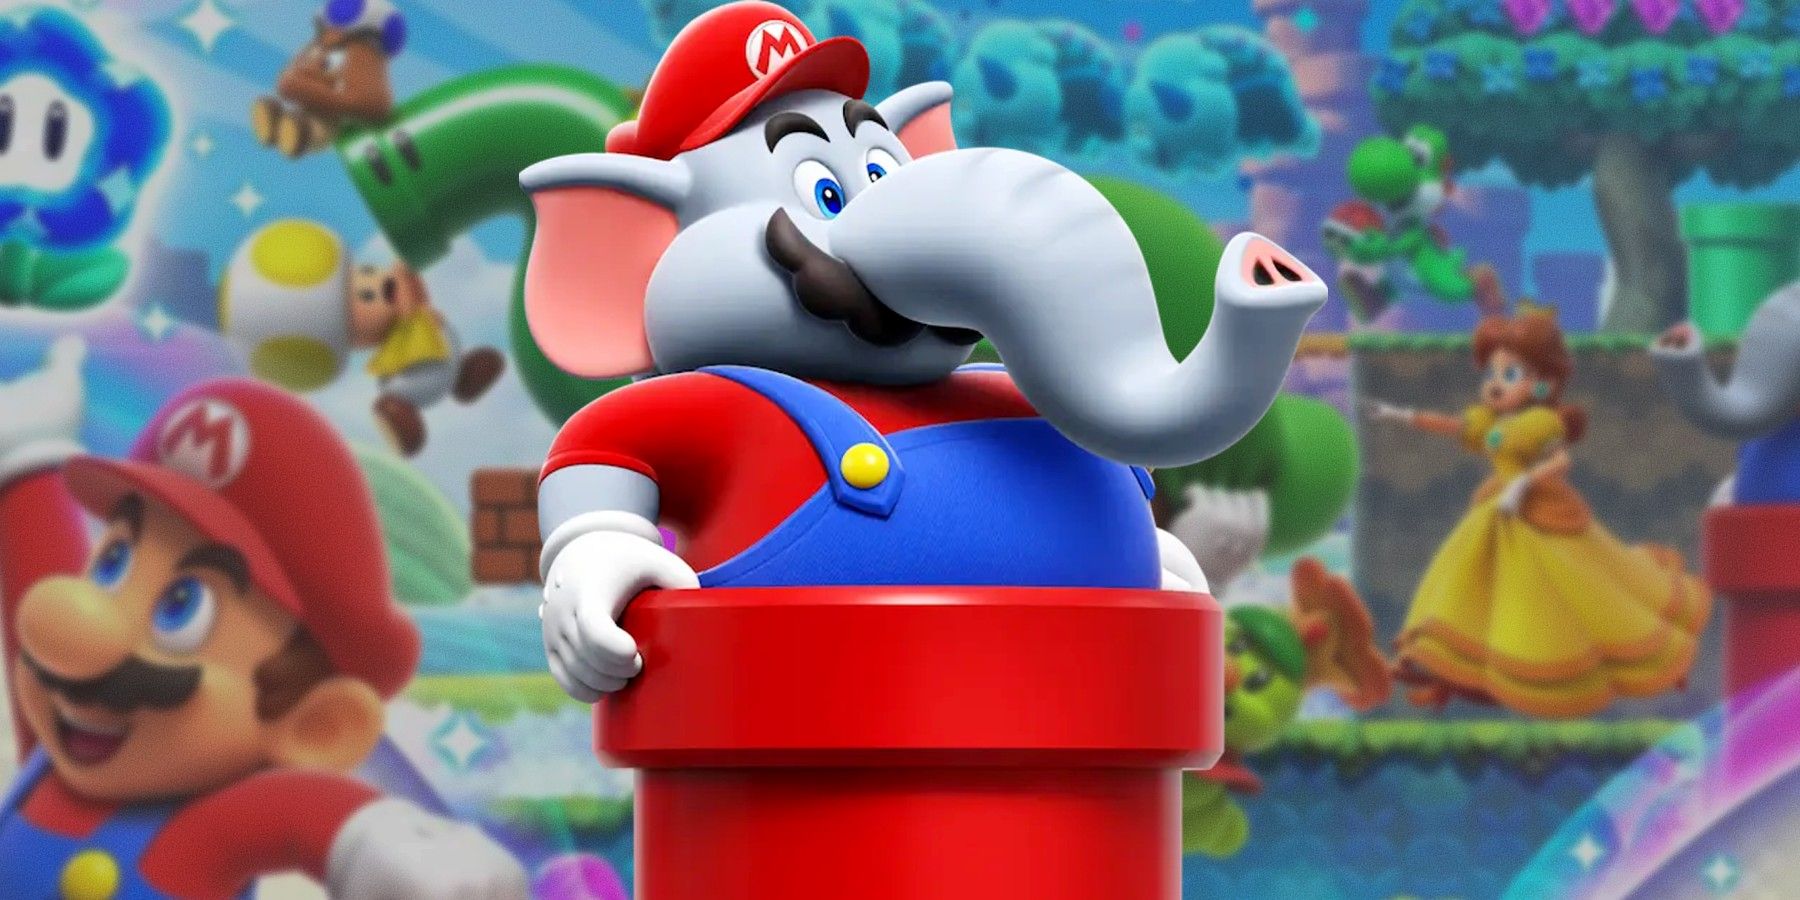 Reseña de Super Mario Bros. Wonder: "La aventura más mágica de Mario"